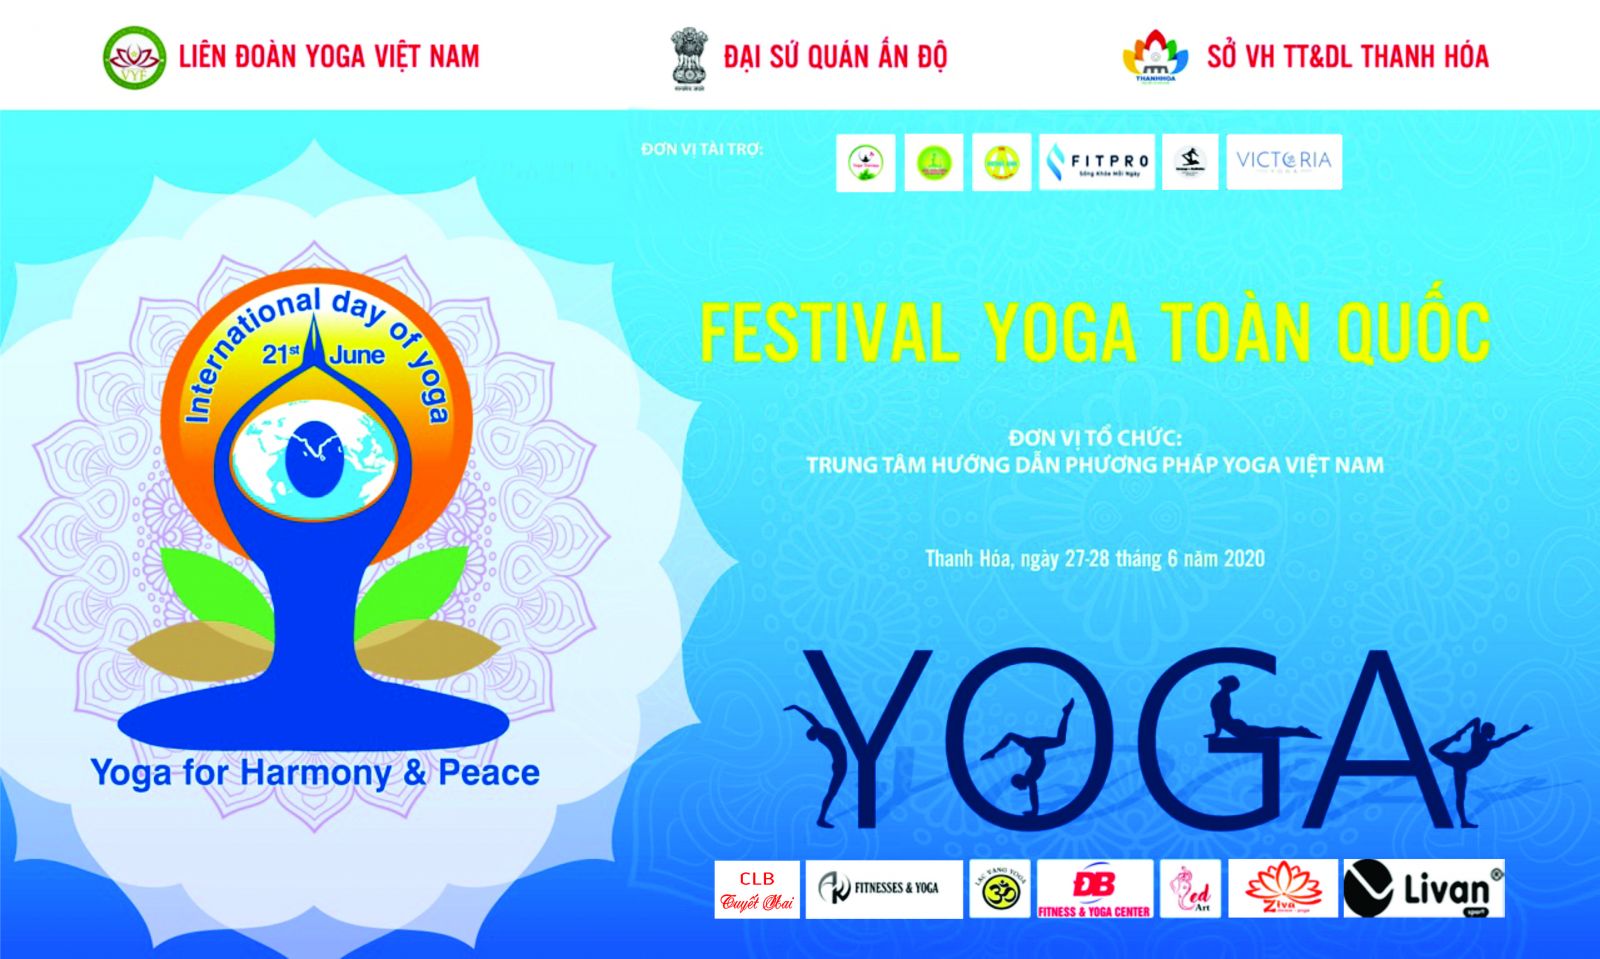 Sắp diễn ra Festival Yoga Toàn quốc năm 2020 tại Thanh Hóa